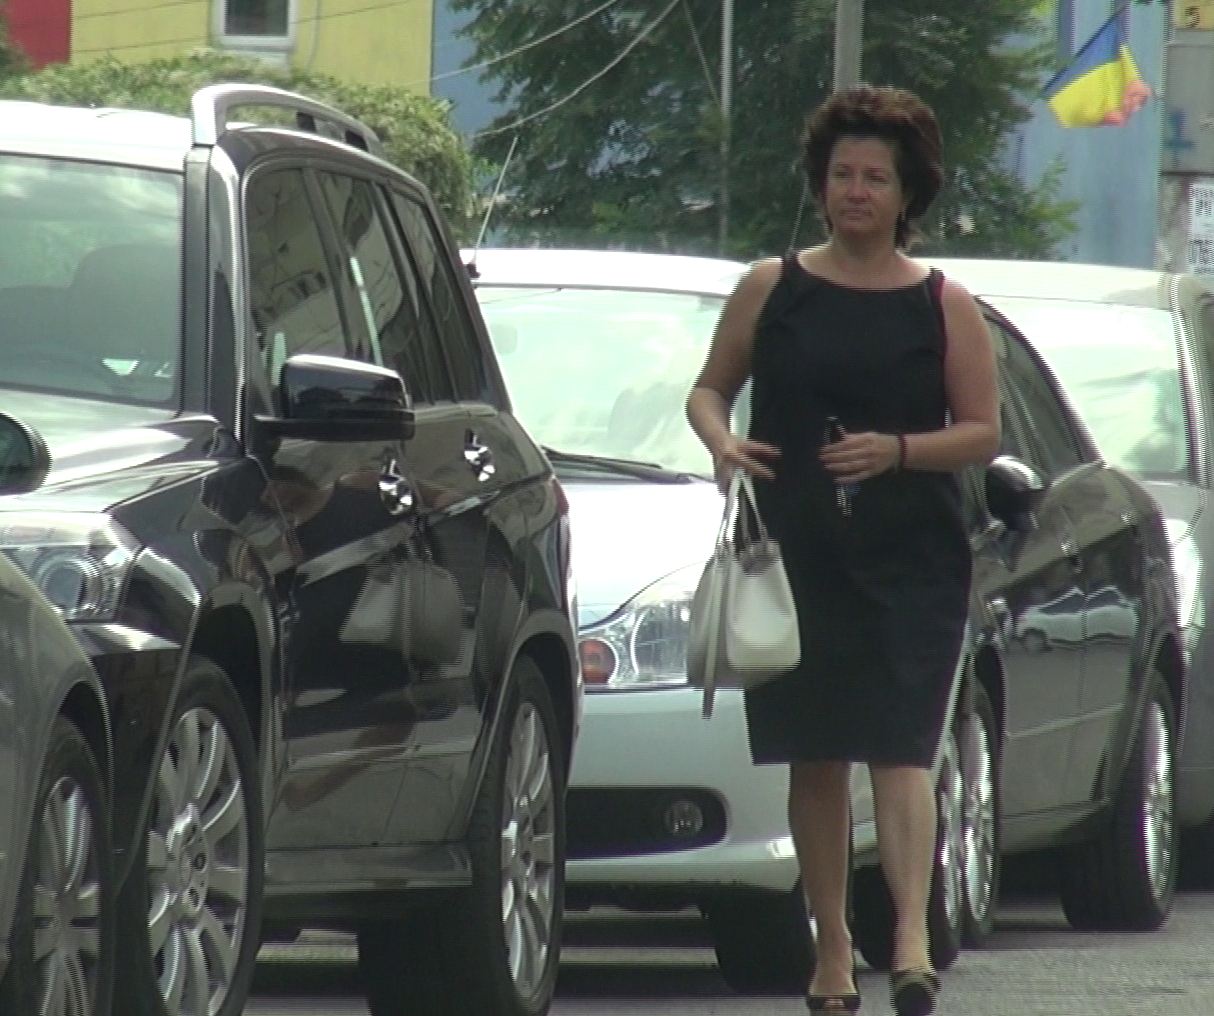 Dupa mai bine de o ora la avocat, Liana Voiculescu s-a intors la masina si a plecat spre casa